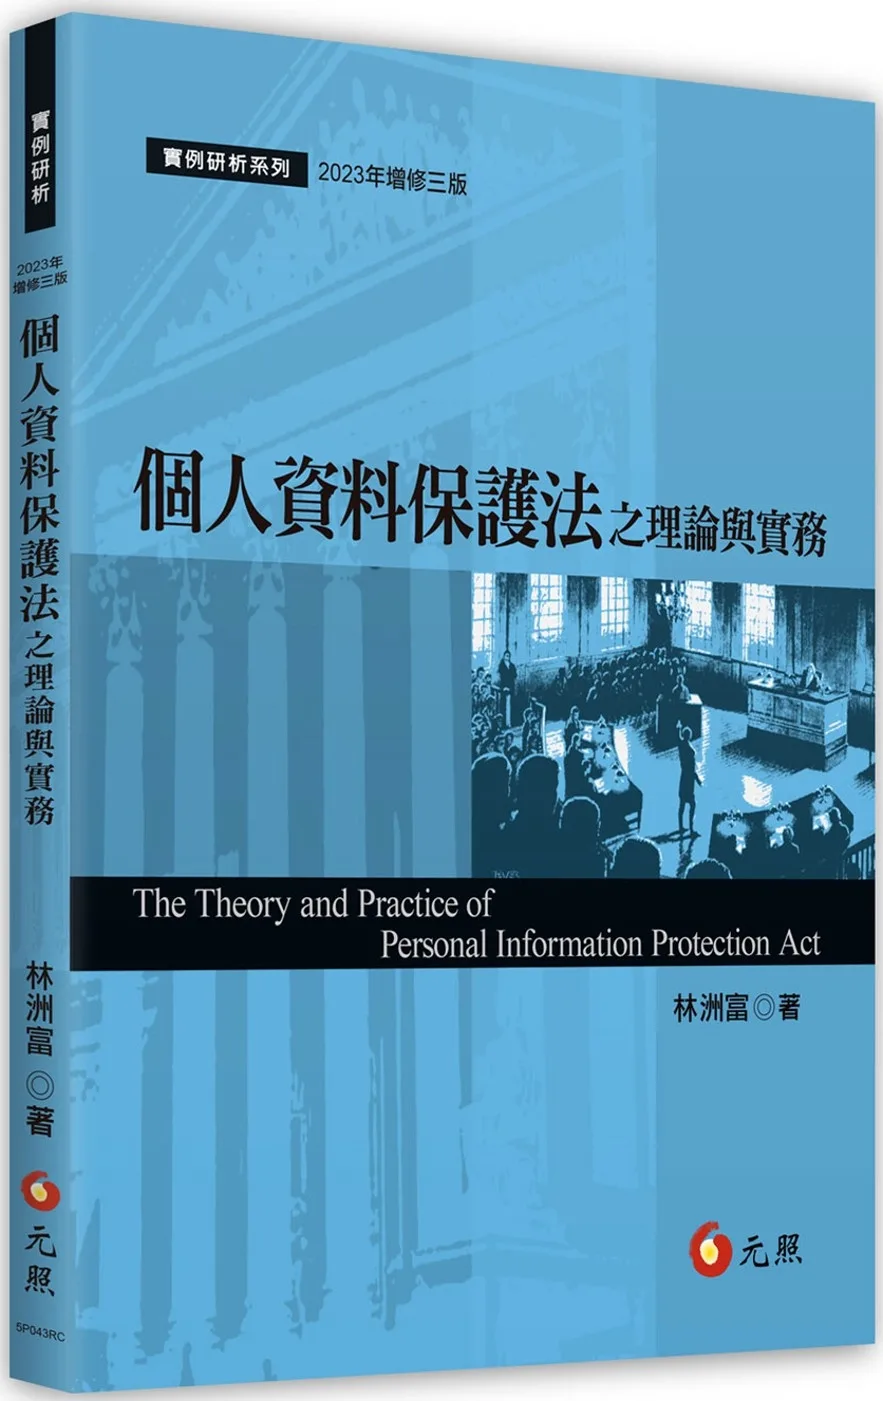 個人資料保護法之理論與實務(三版)